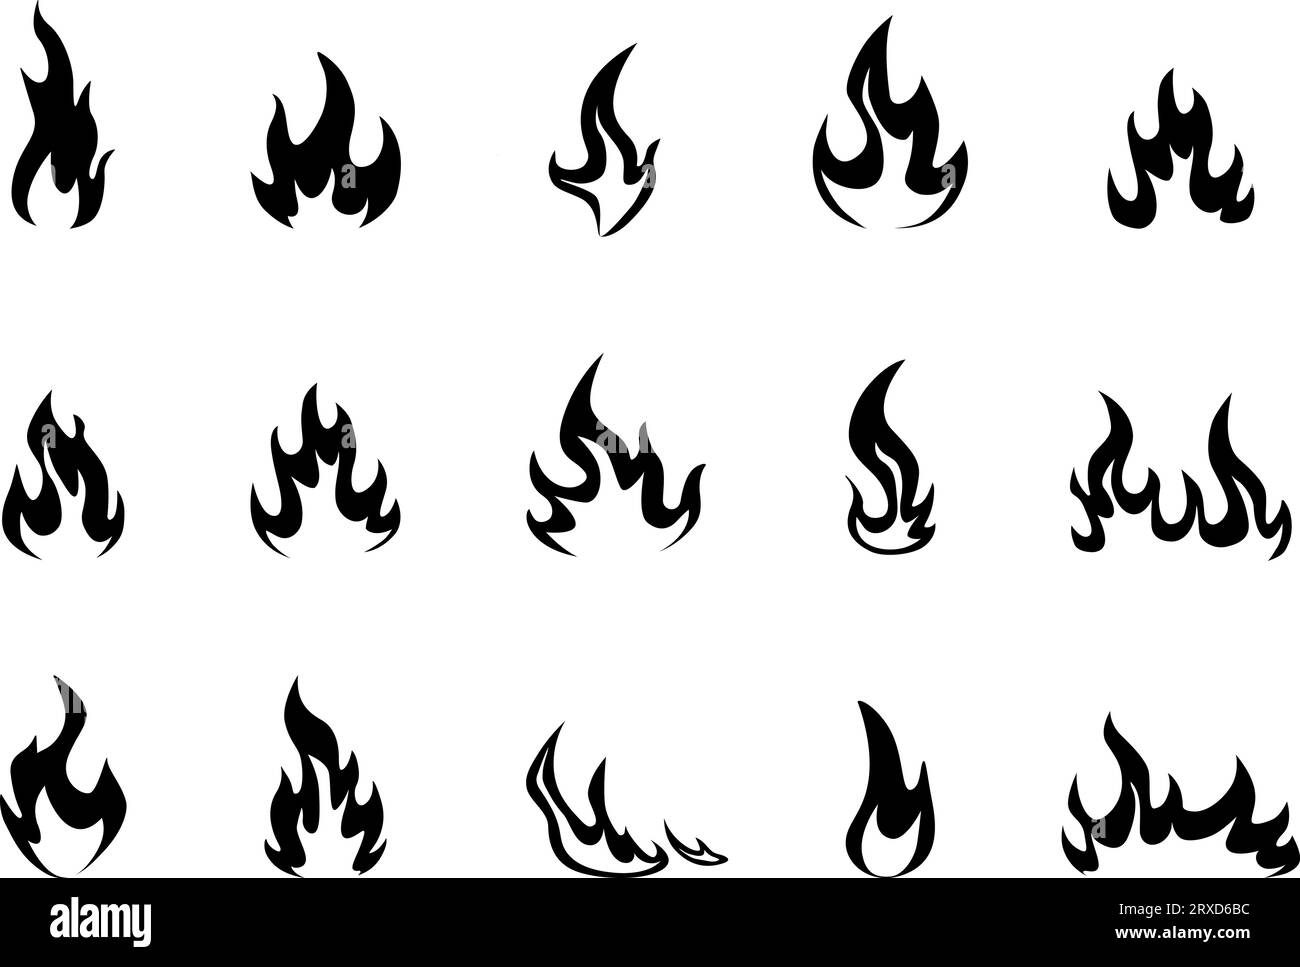 Blackfire-Symbole. Schwarze Flammen und Feuersilhouetten, heiße Grillsymbole. Brennbares Stoff-feuriges Logo, monochromes flammendes Nowaday-Vektorset Stock Vektor